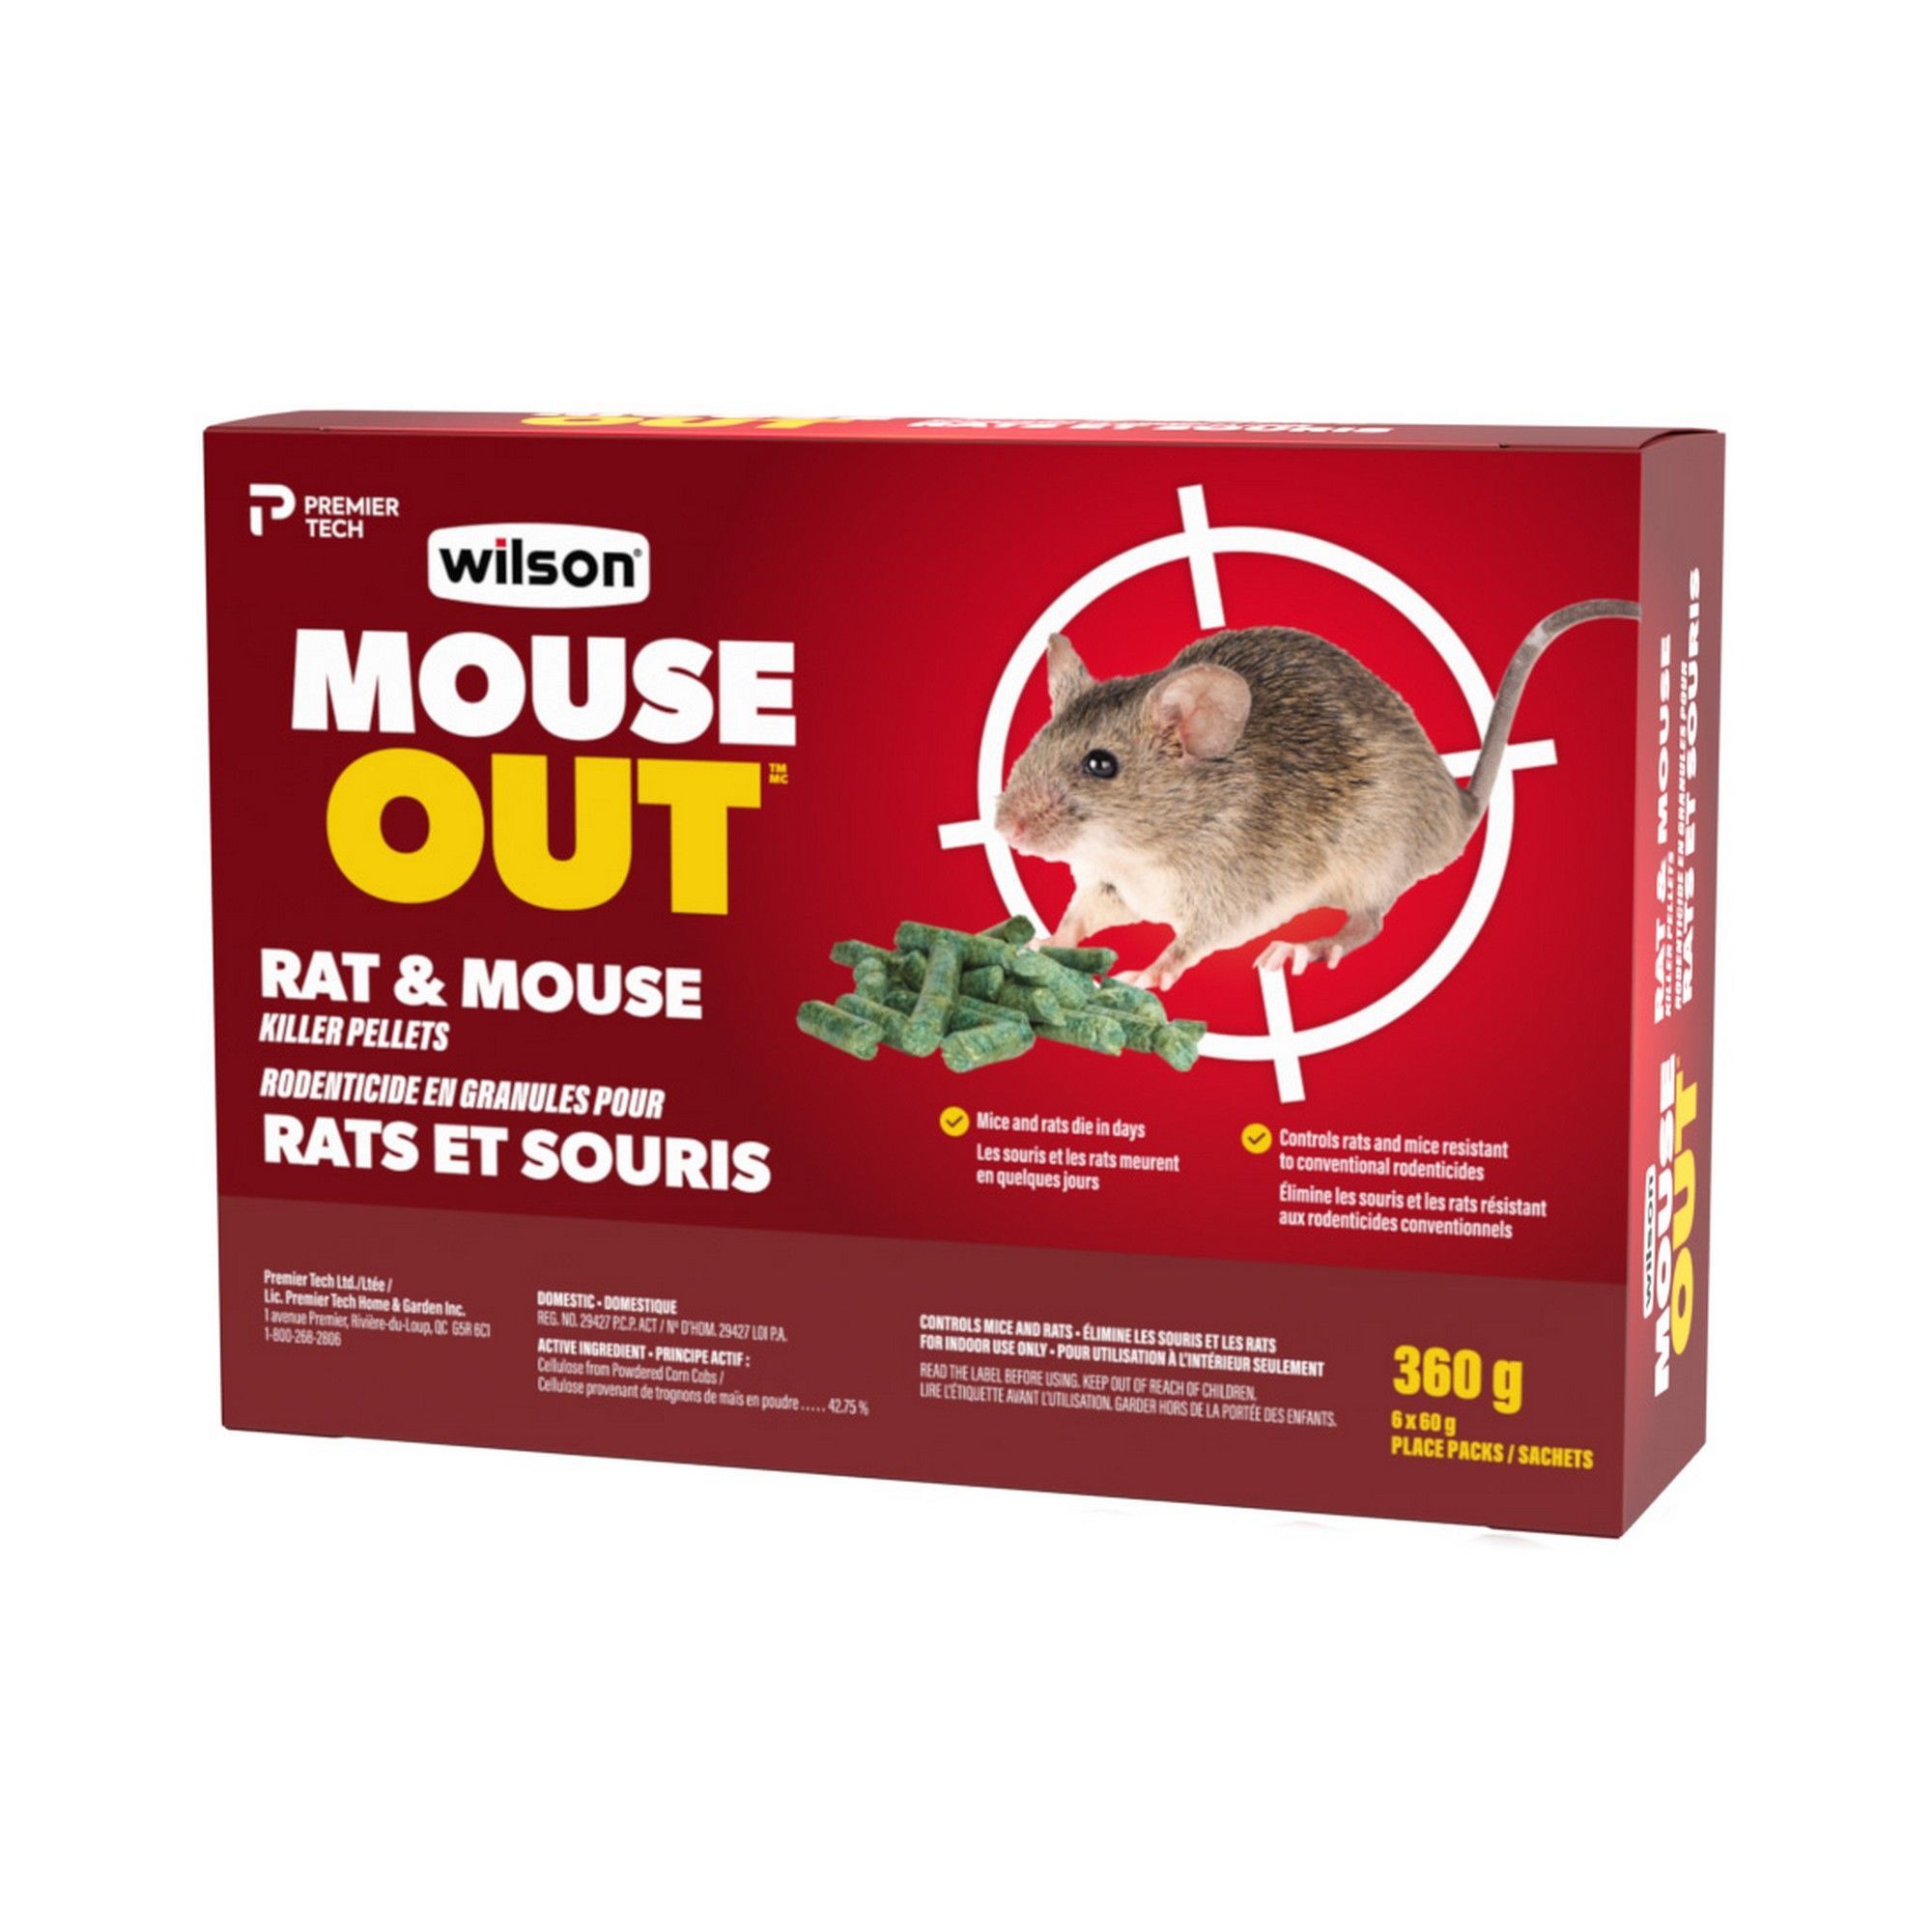 EMEROD 5 KG, poudre répulsive anti souris, rat, fouine pour comble & grenier